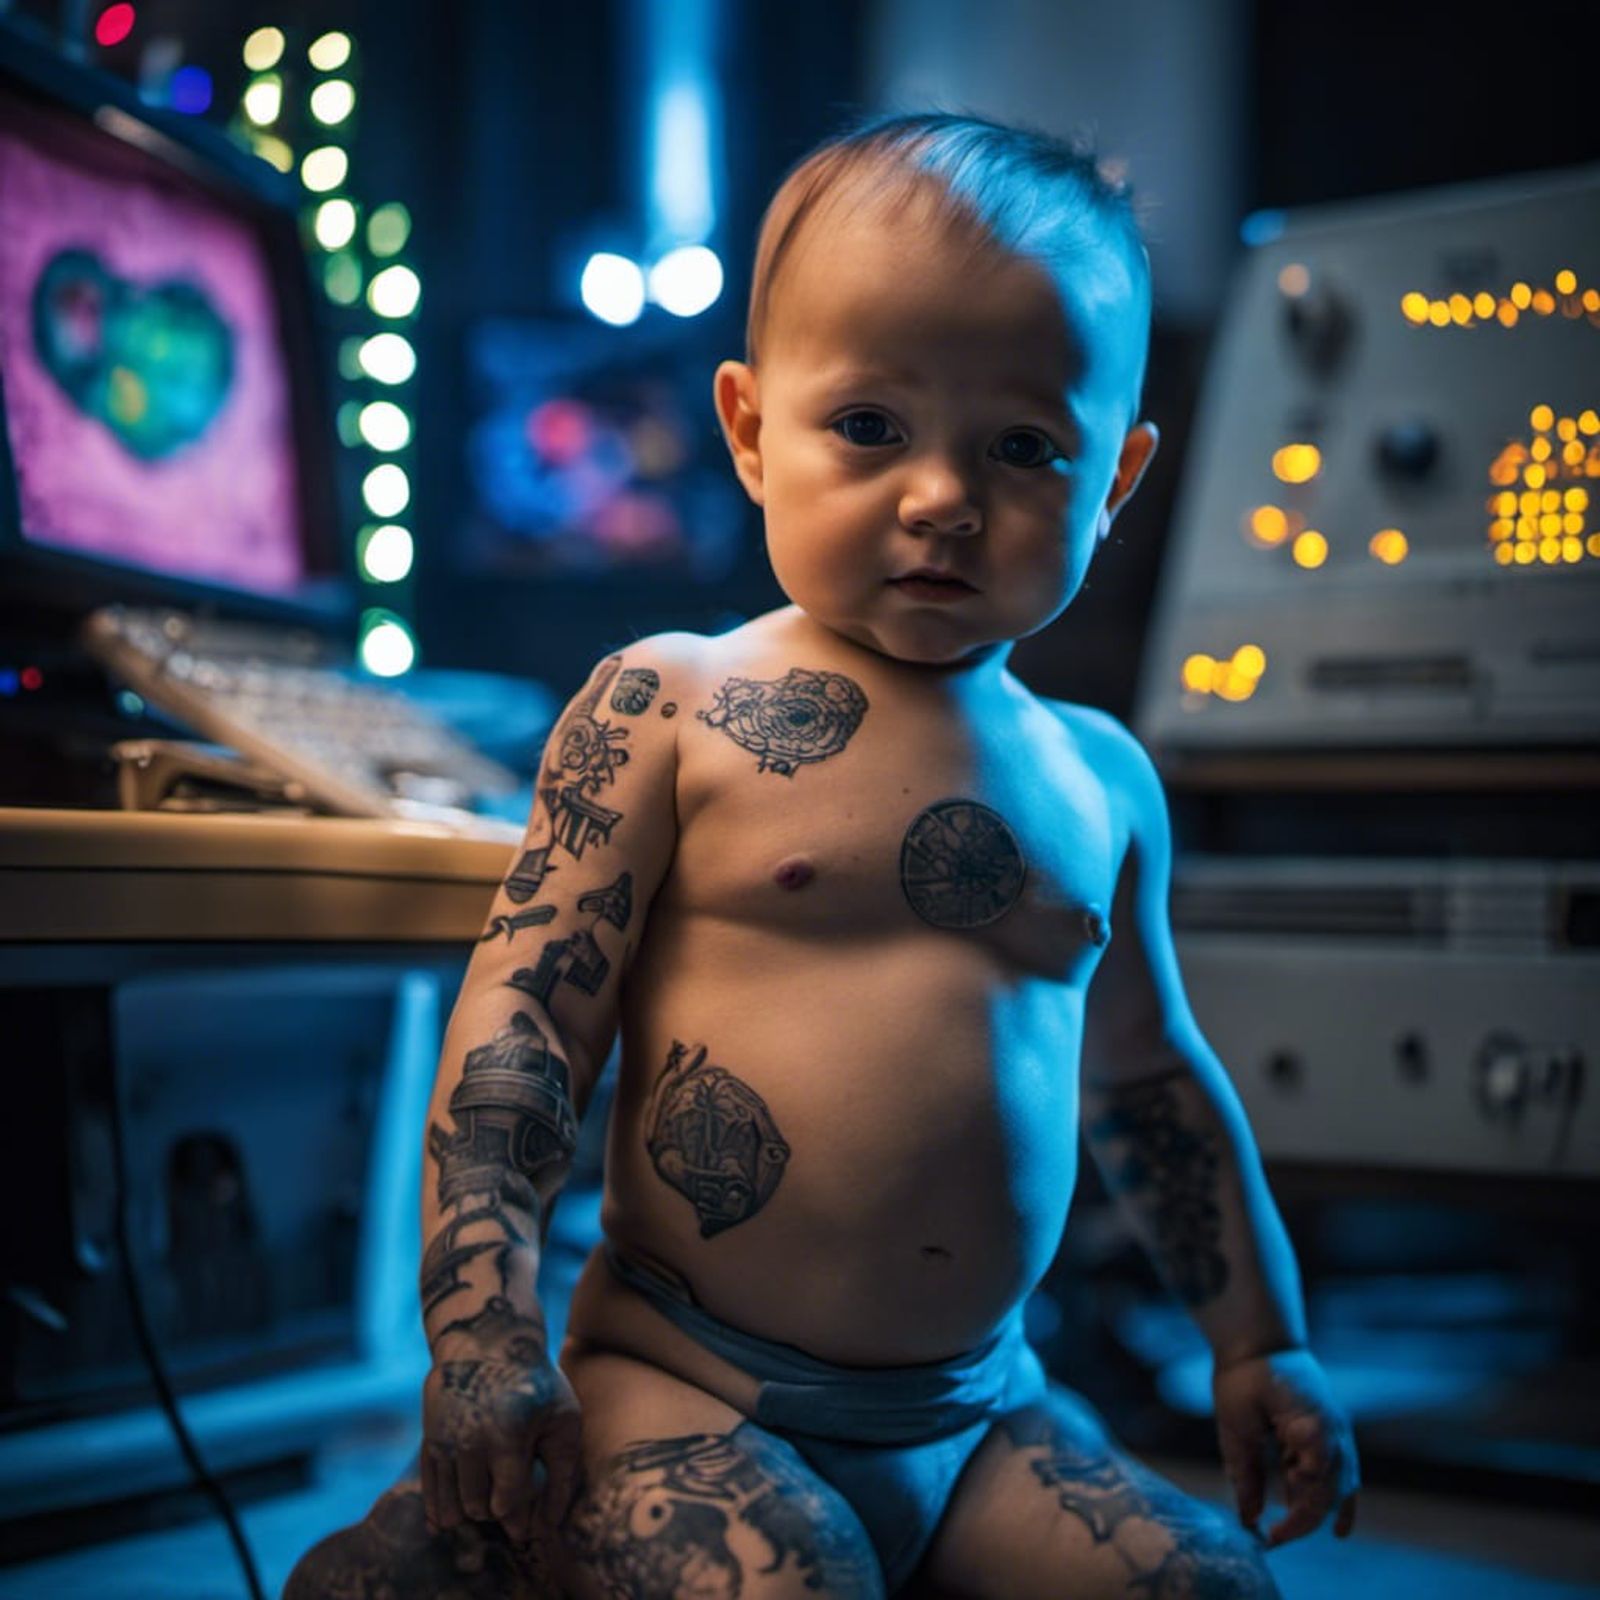 programmer tattoos